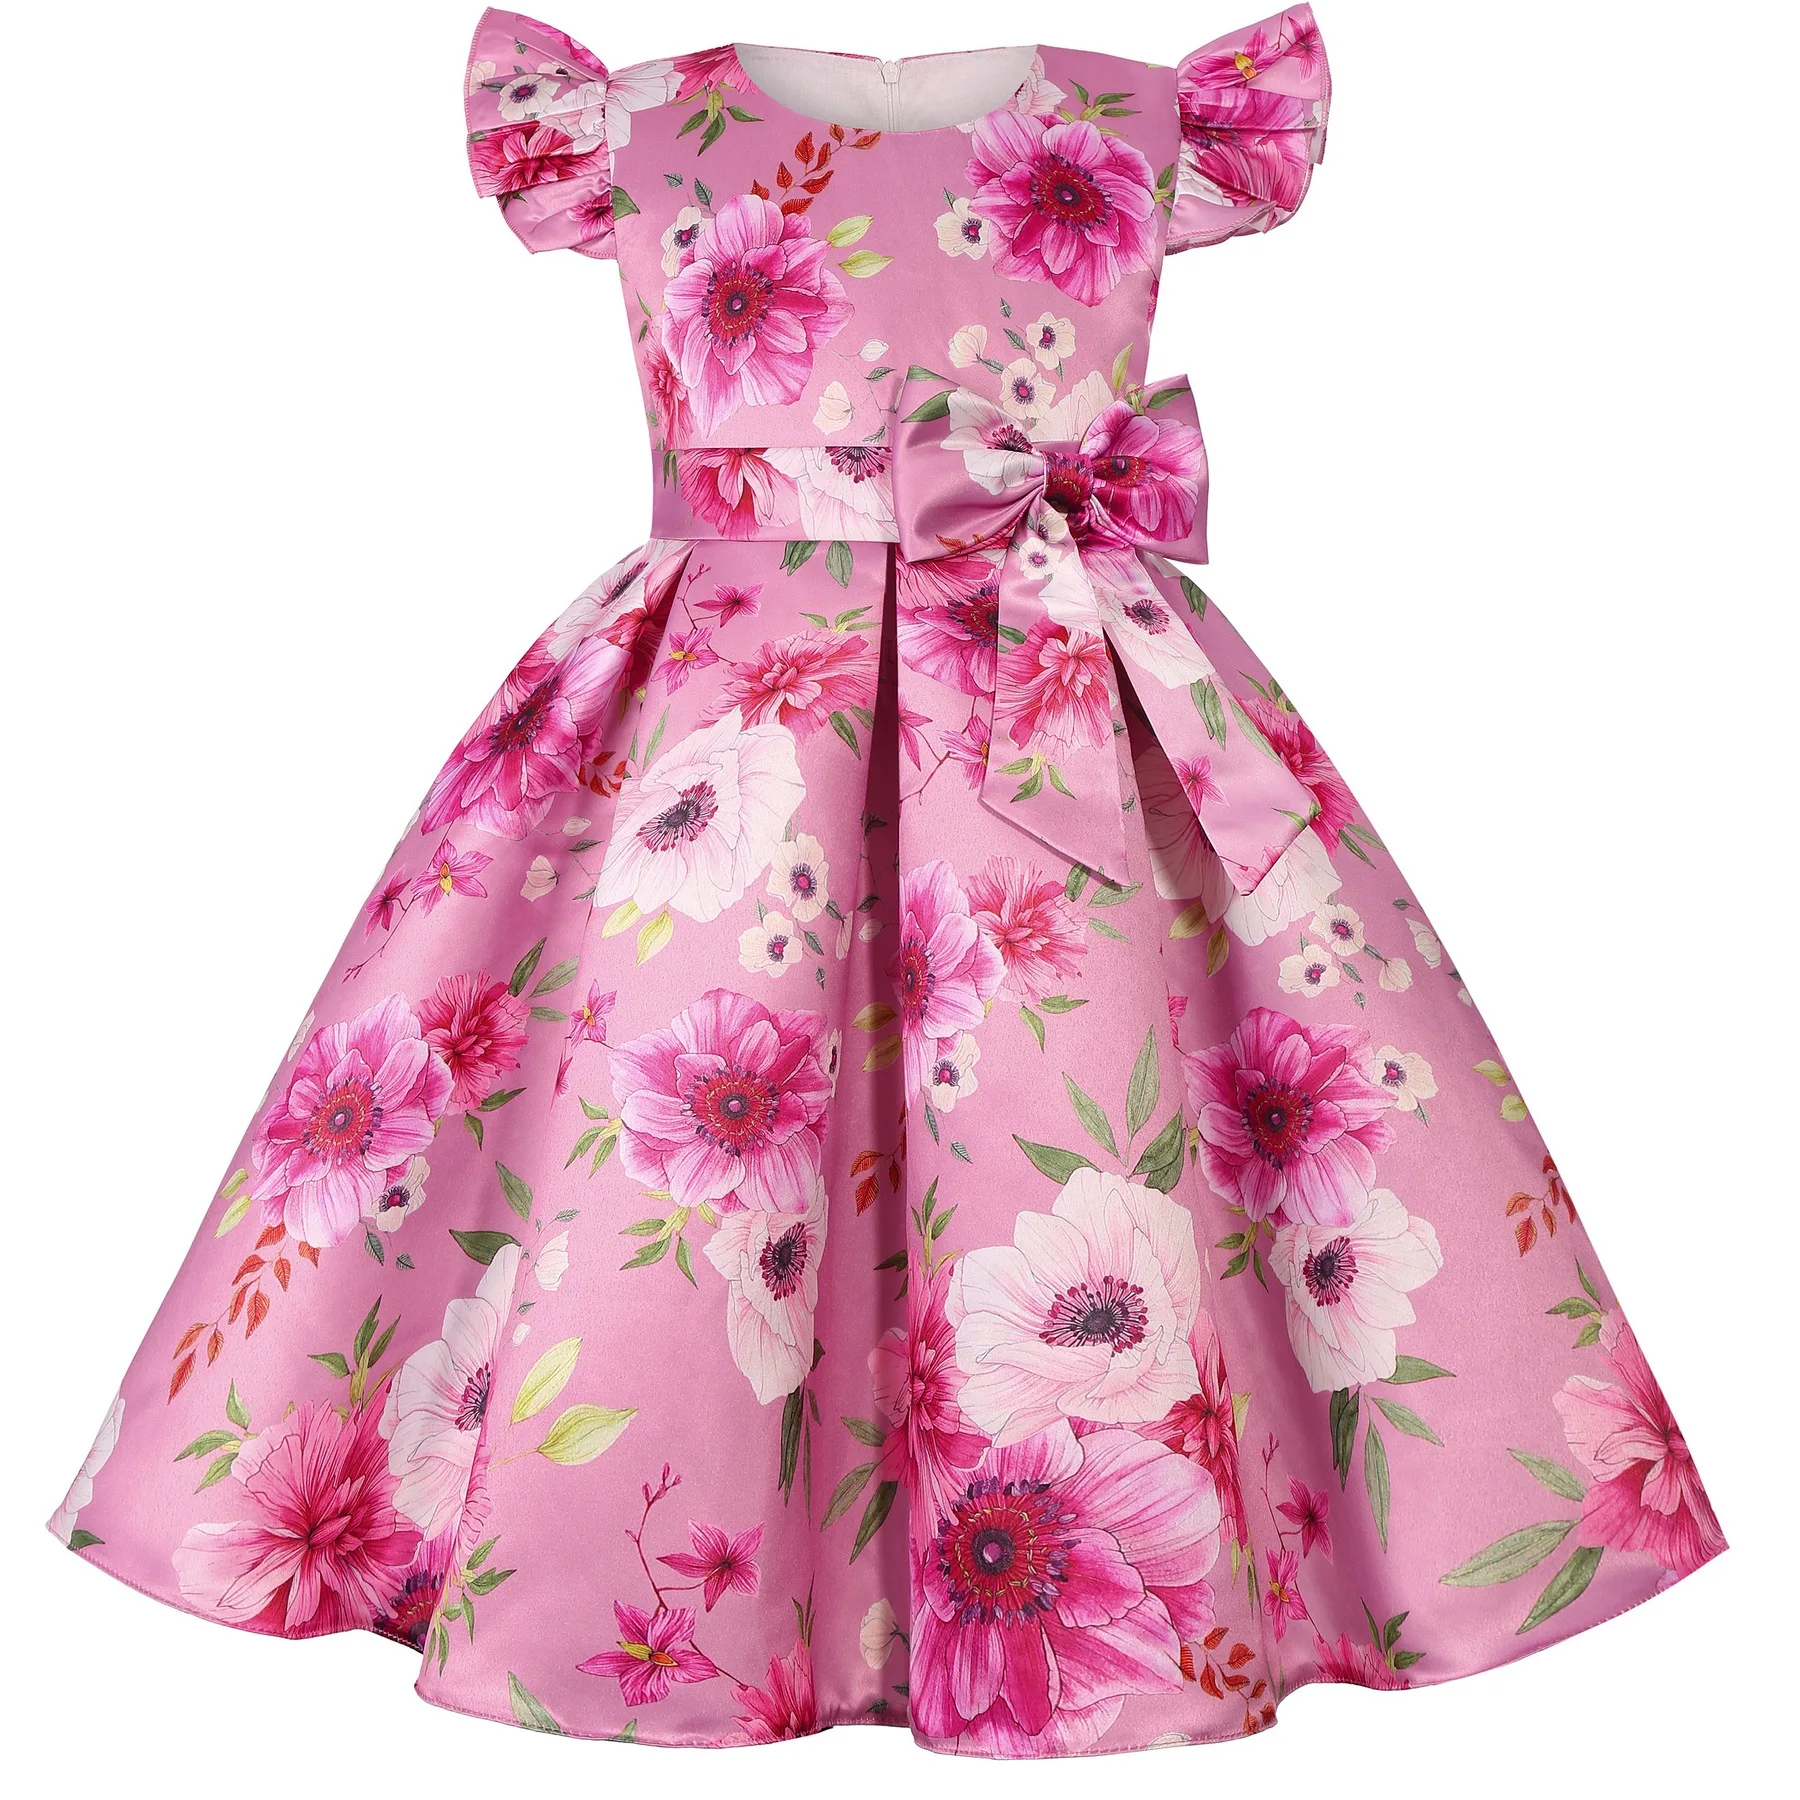 

Летнее платье для девочек с принтом роз, свадебные платья принцессы для дня рождения, атласные детские платья, платья для девочек, Рождественская одежда